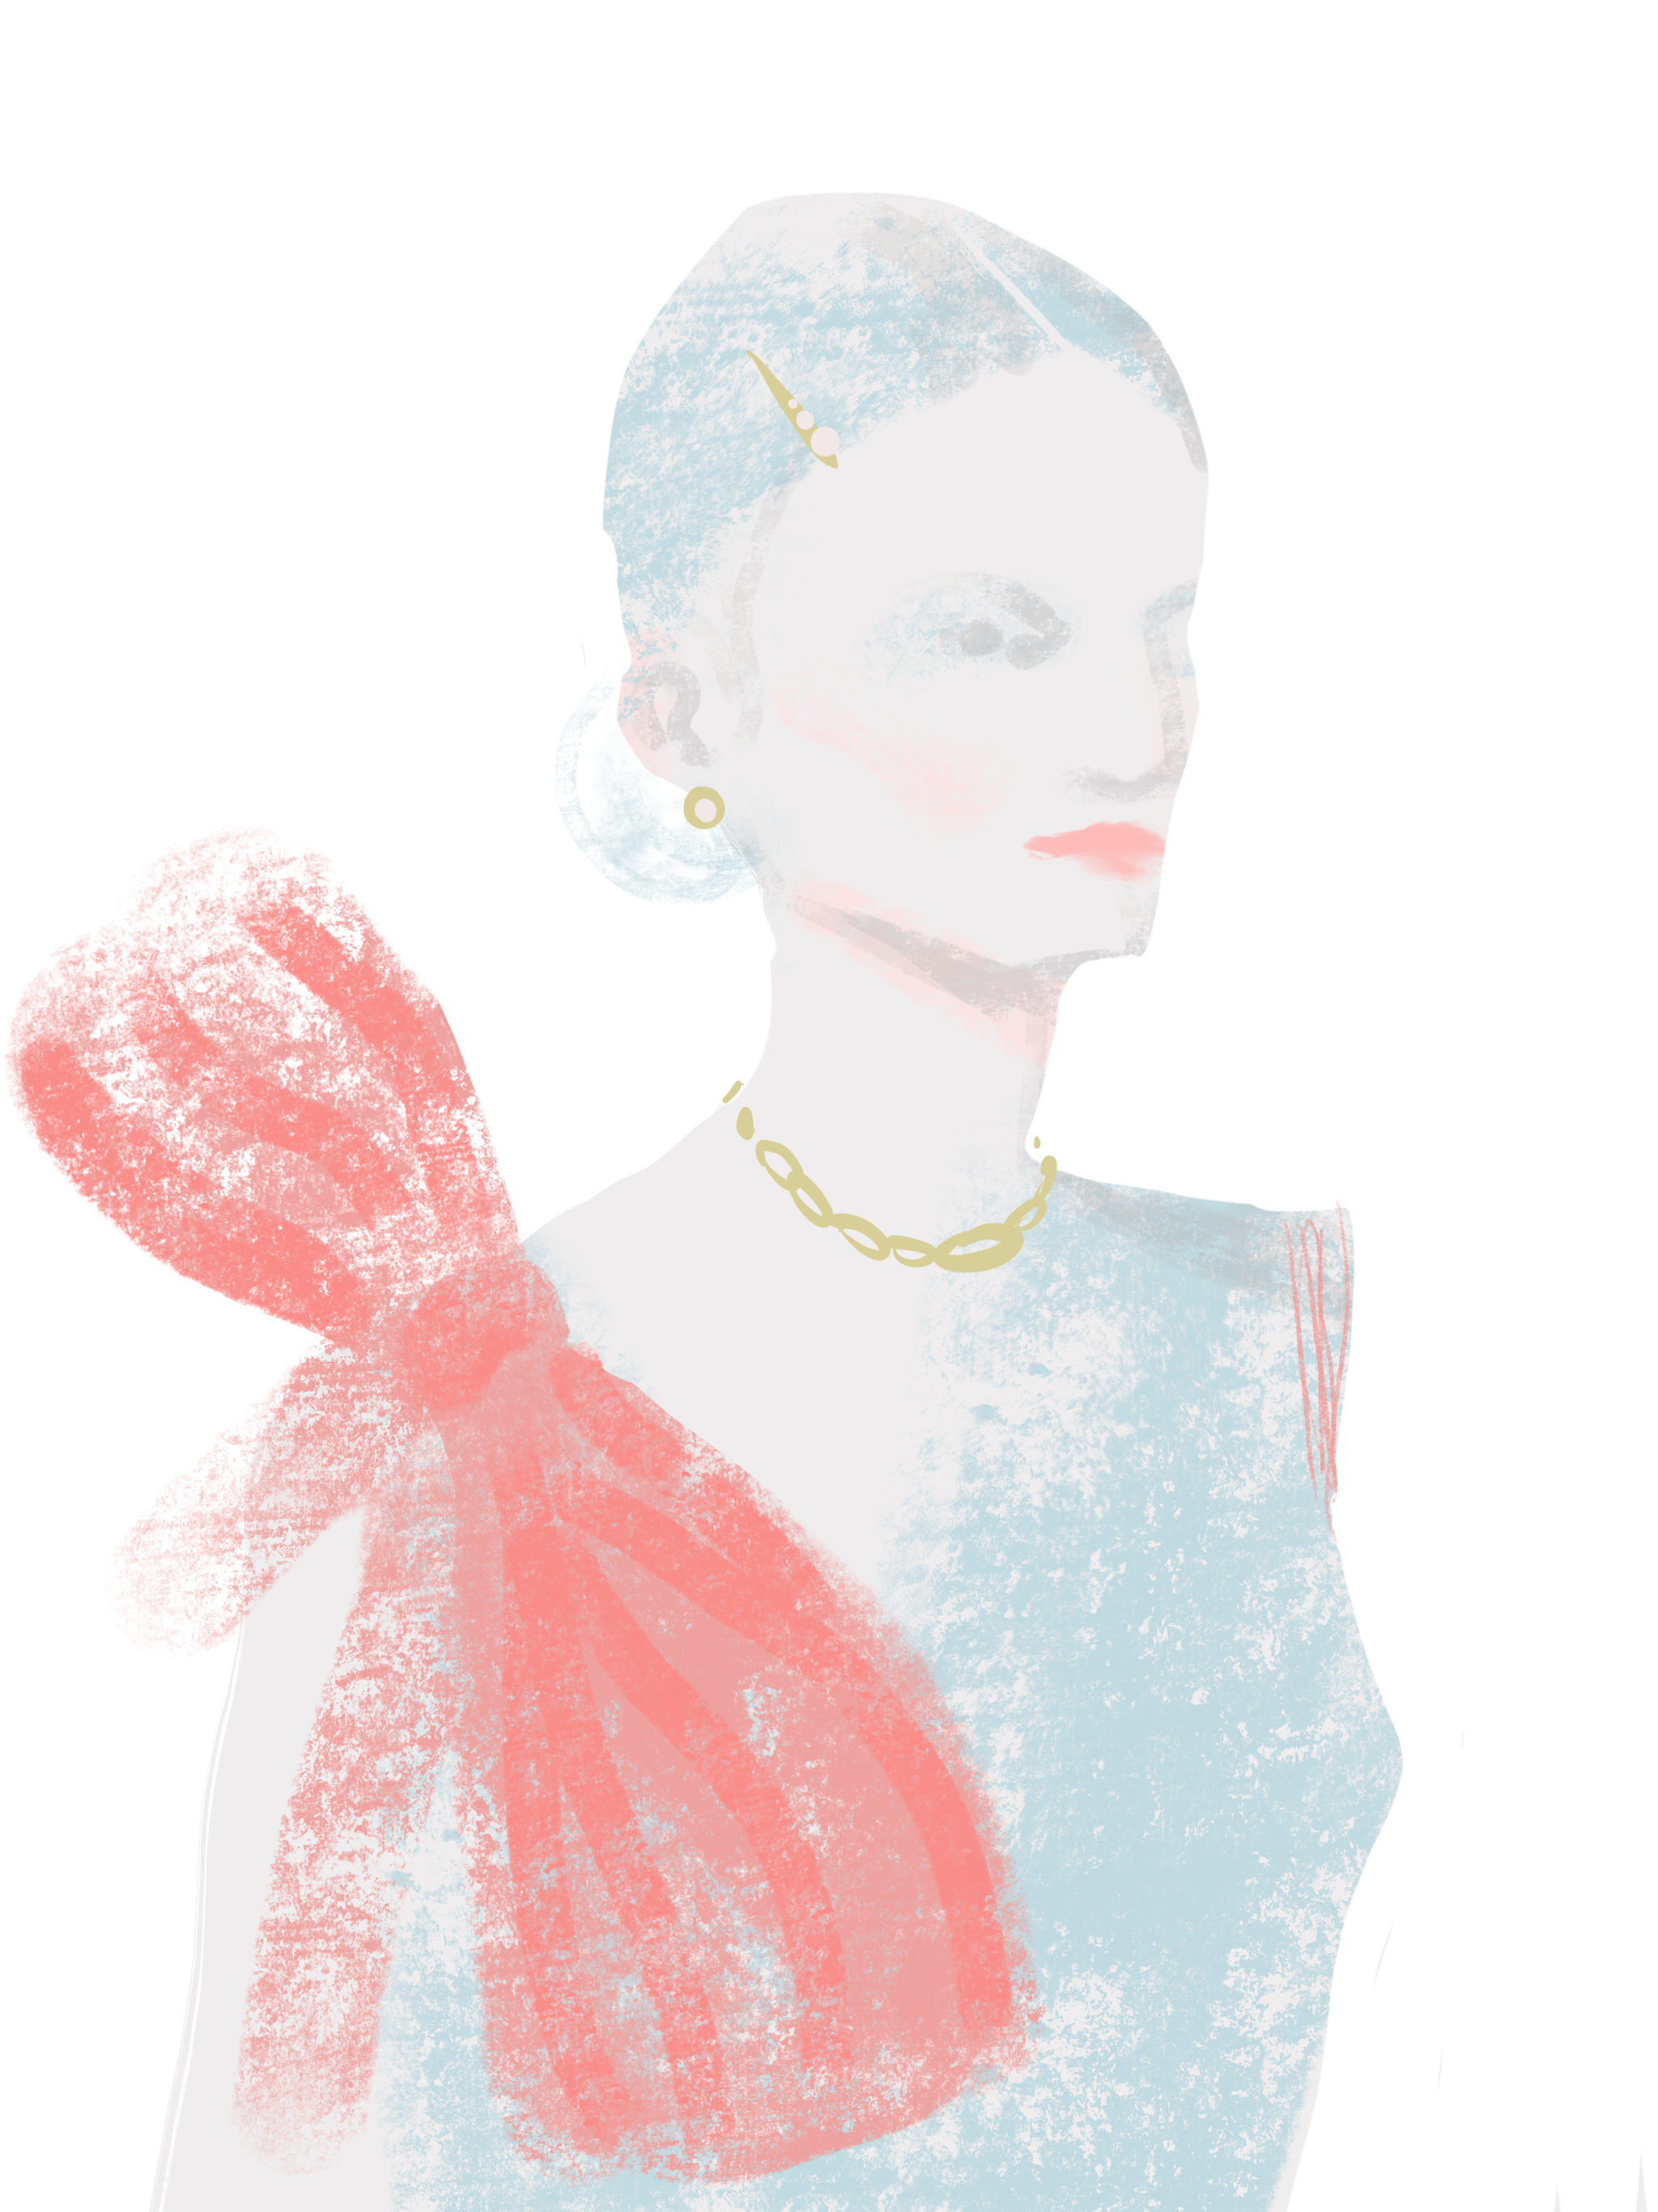 Pink Ribbon Dress, fashion illustration by Silvana Mariani